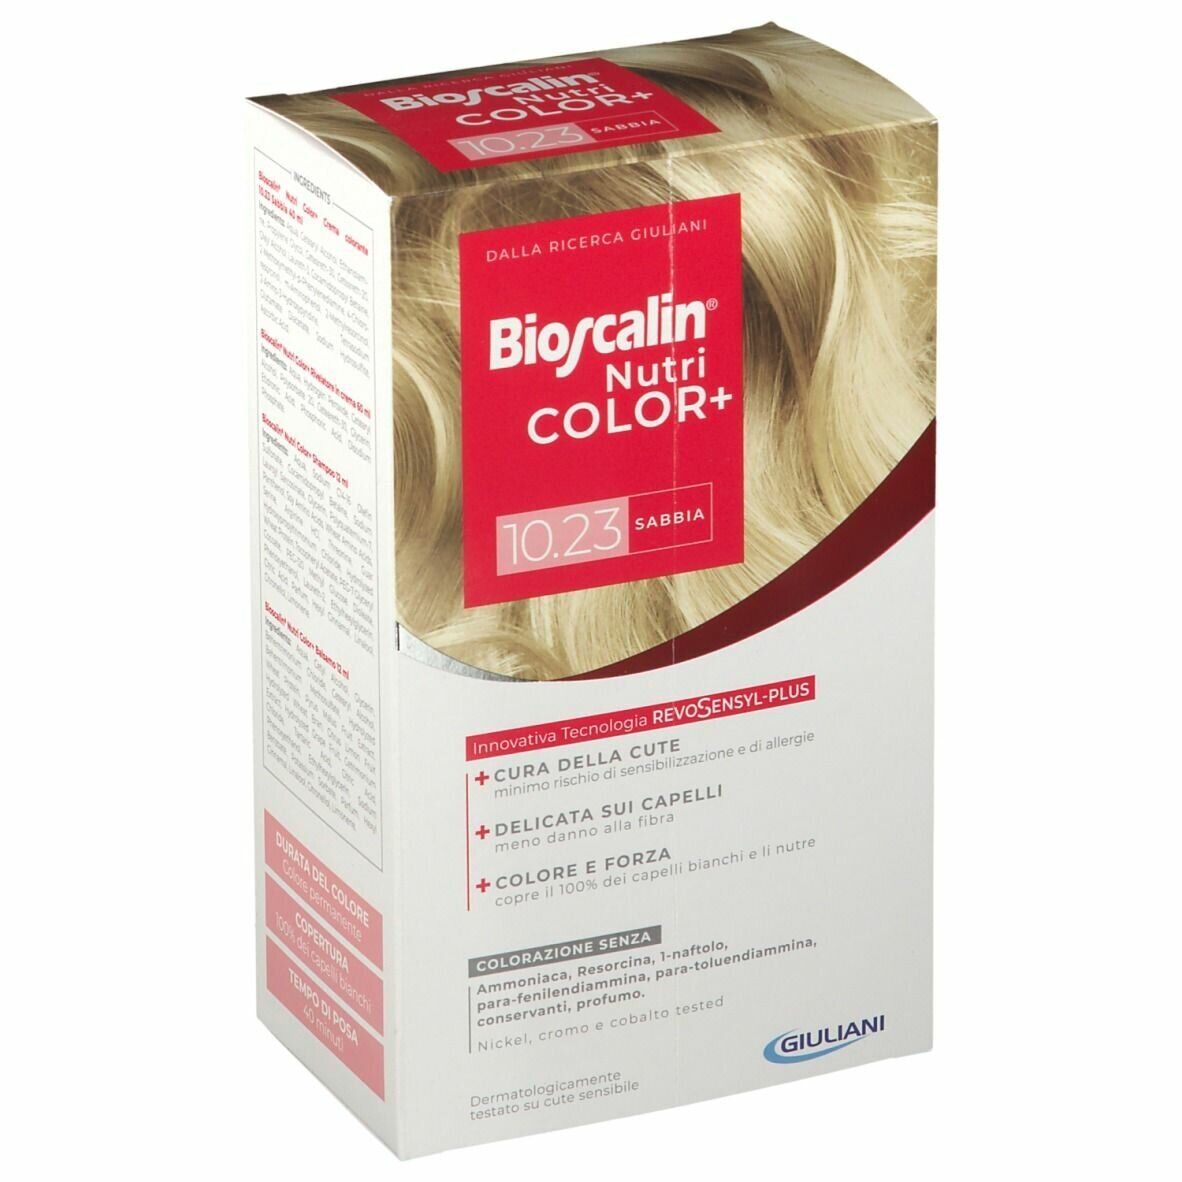 Bioscalin Nutri Color Plus 10.23 Sabbia Trattamento Colorante